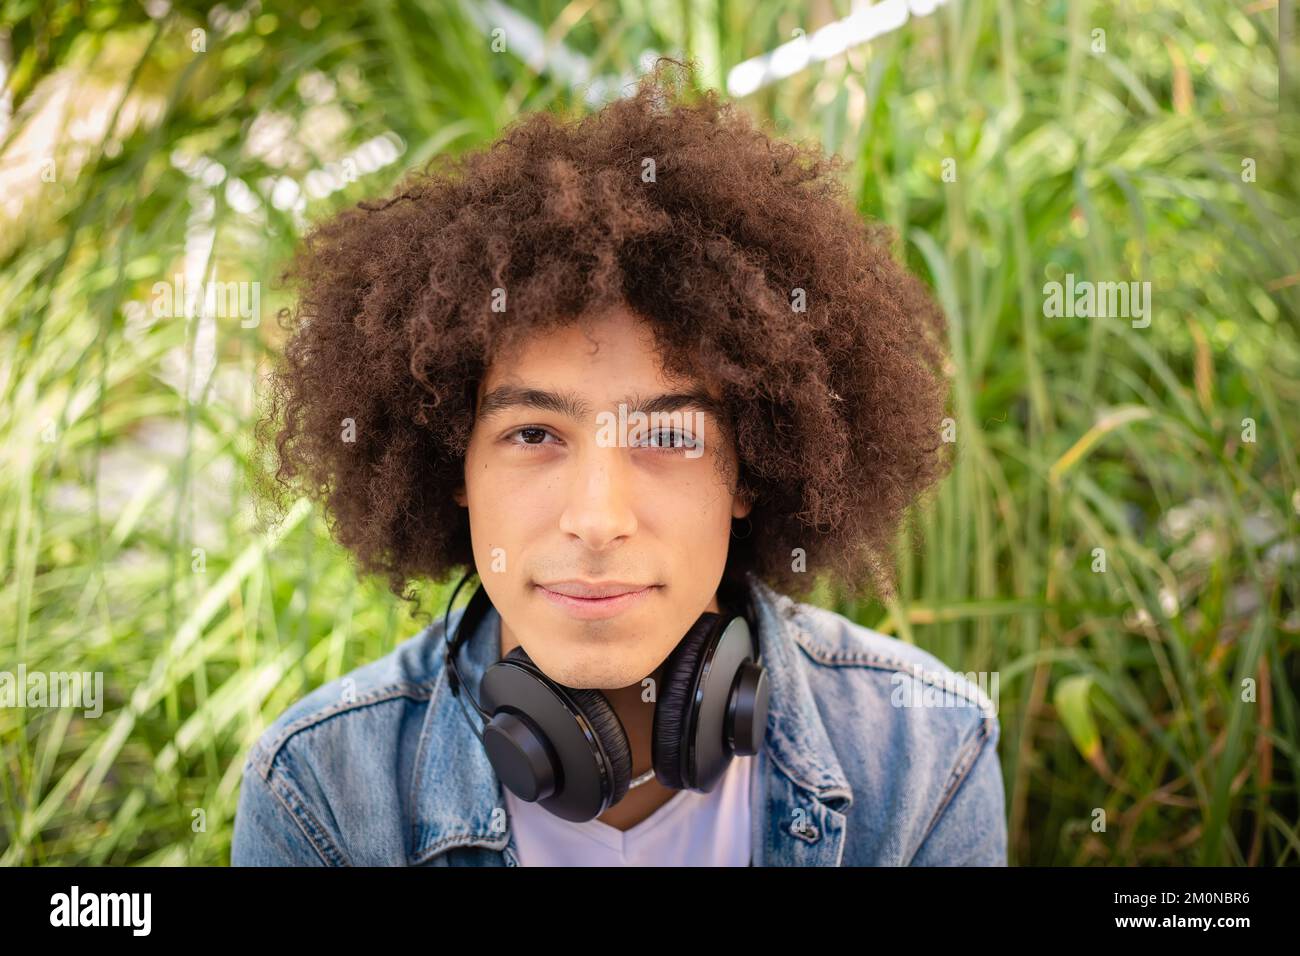 Porträt eines lächelnden jungen afro-italienischen Teenagers mit dickem lockigem Haar auf den Straßen in einem grünen Bereich mit Kopfhörern Stockfoto